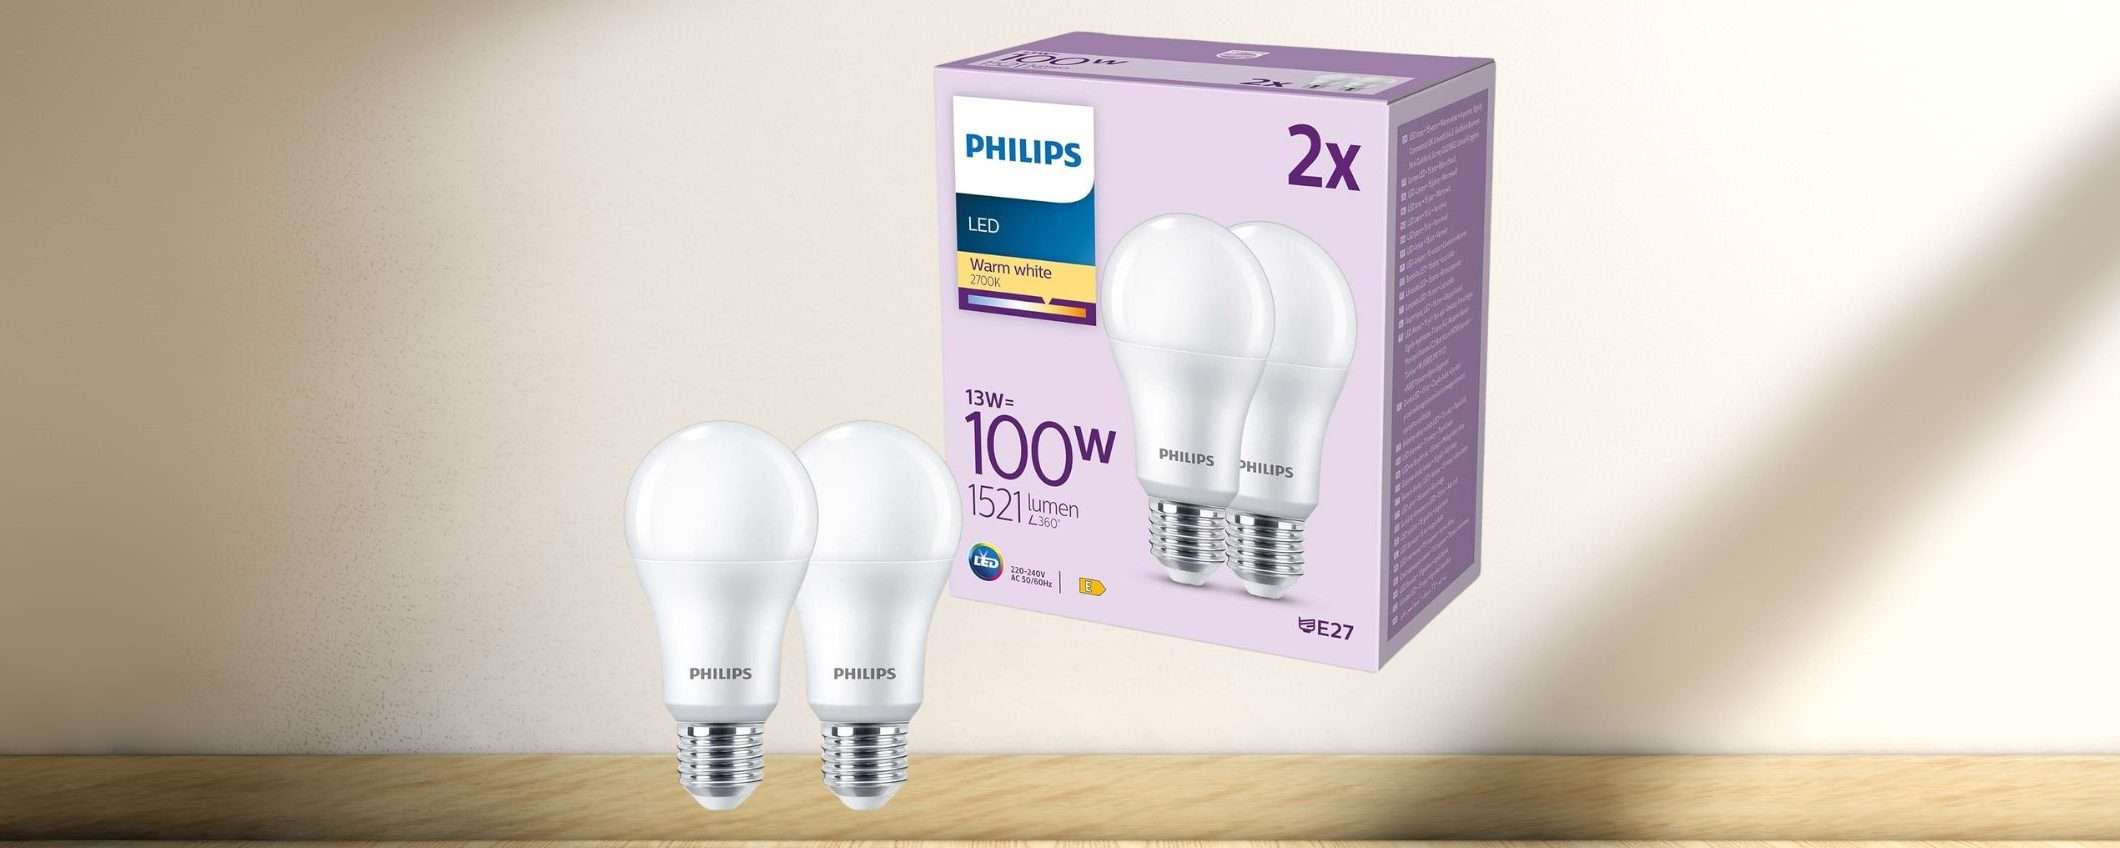 Lampadine LED Philips E27 a PREZZO SCORTA su Amazon (-22%)